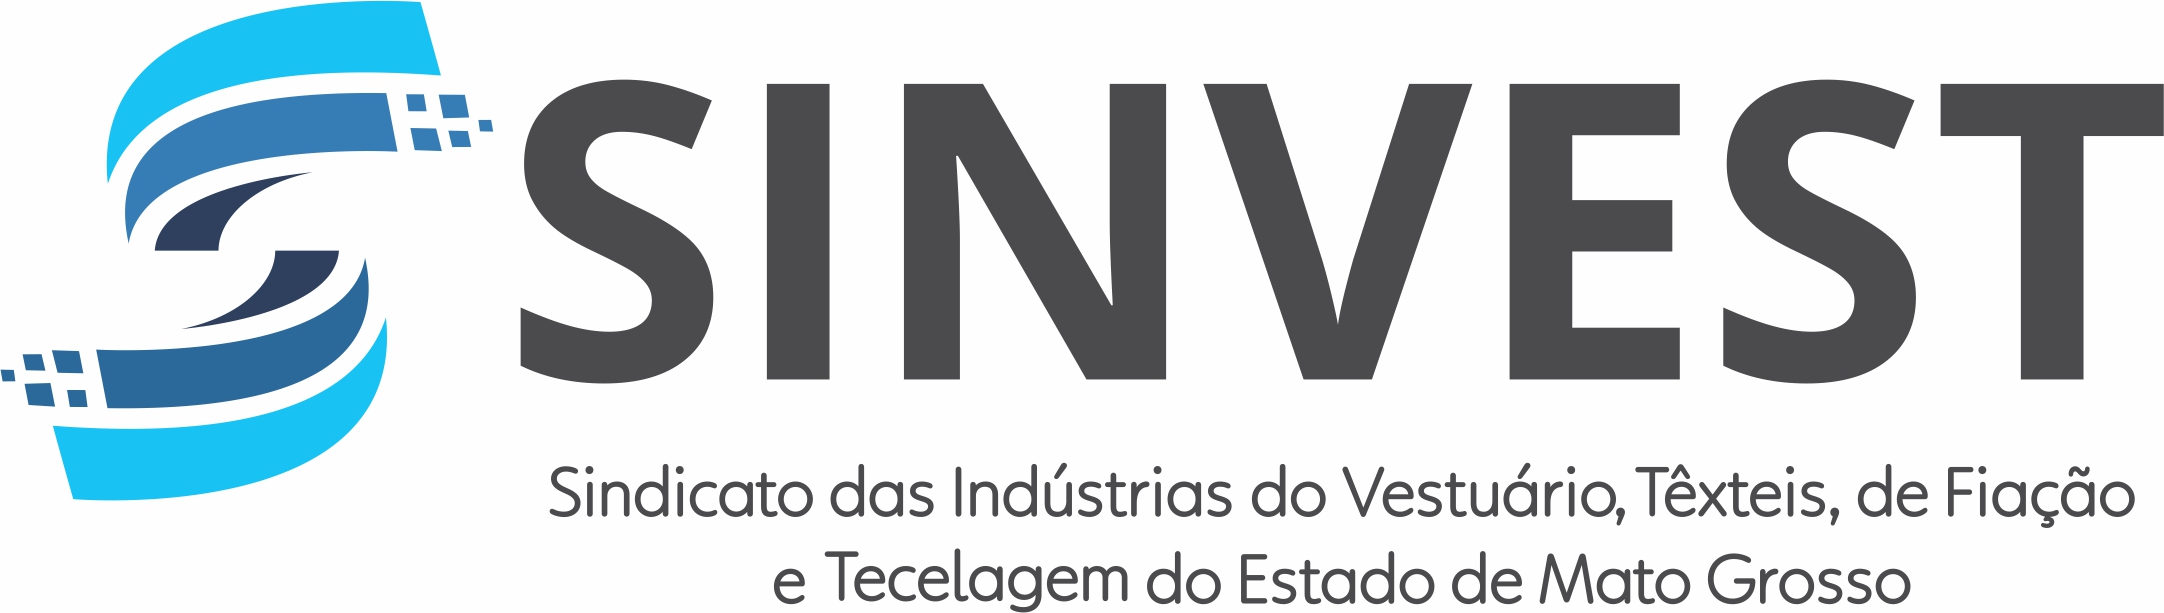 Sindicato das Indústrias de Vestuário, Têxteis, de Fiação e Tecelagem do Estado de Mato Grosso